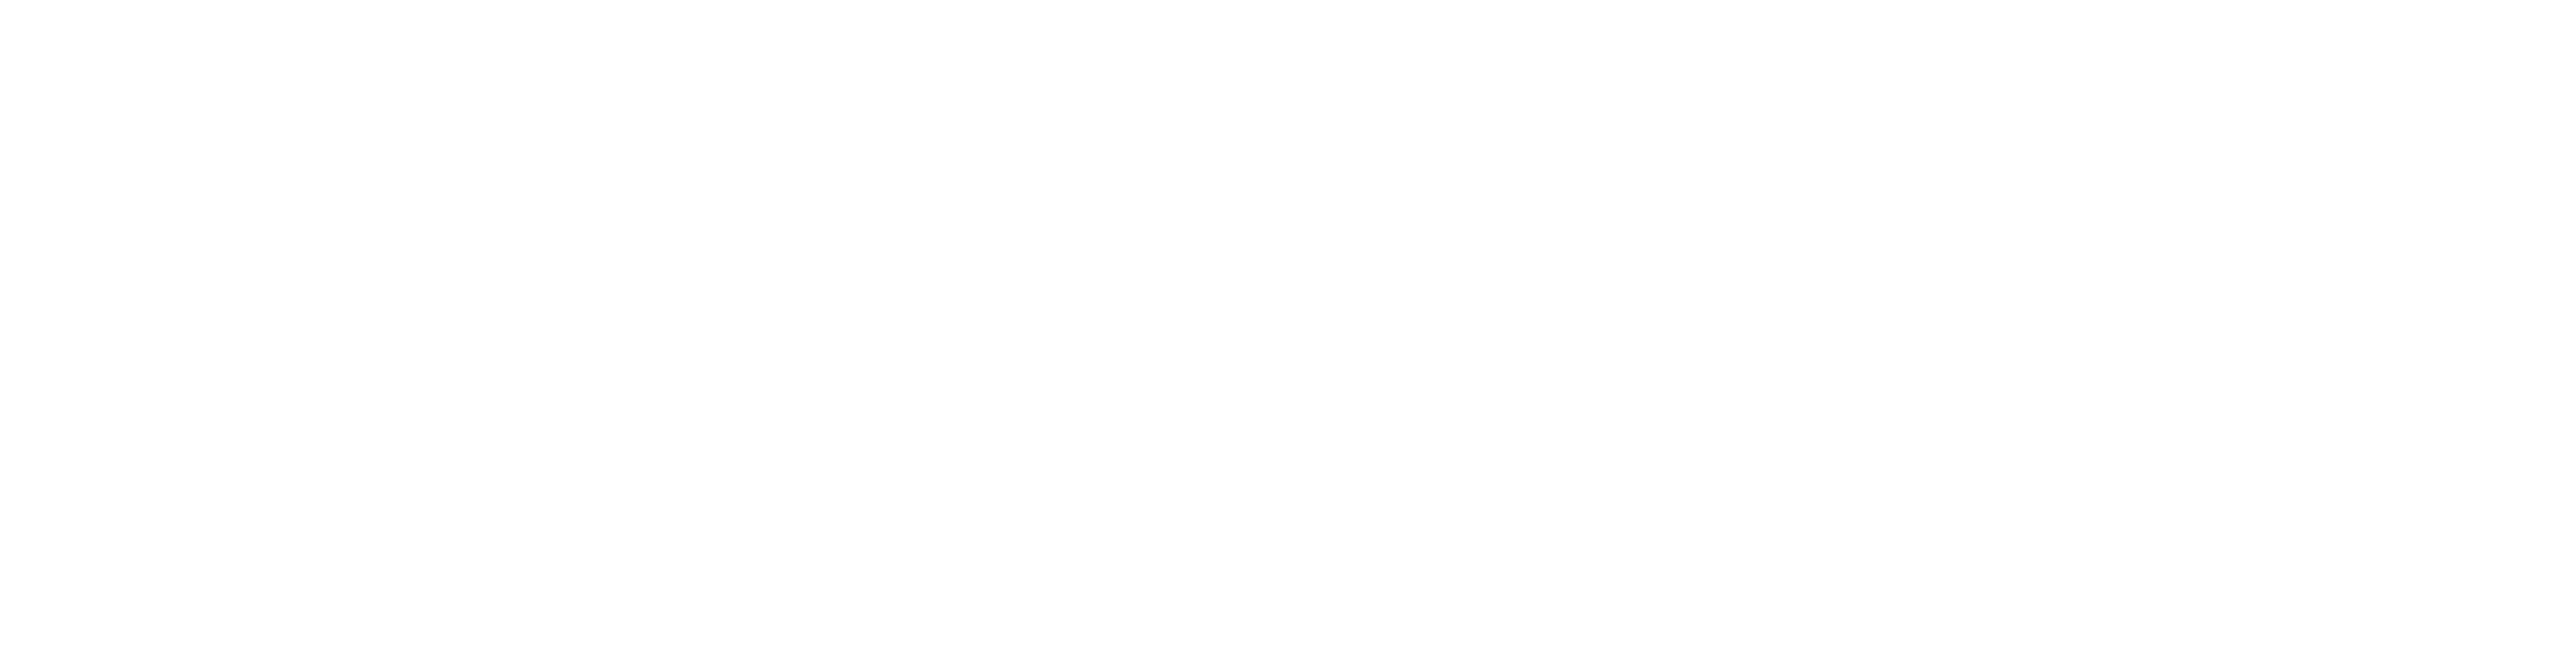 Tracab logo